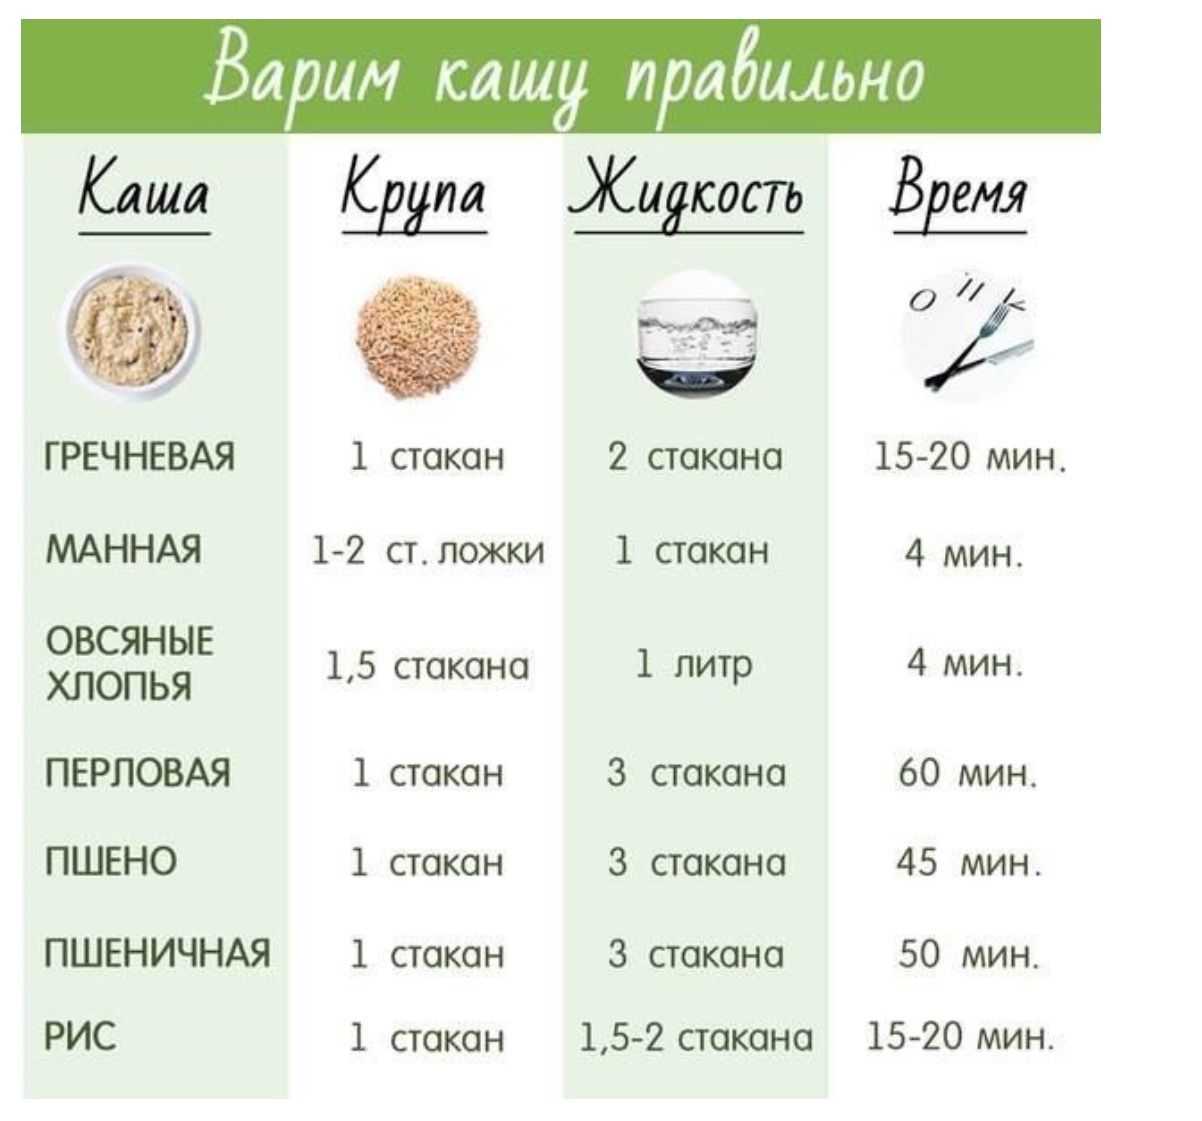 Каши для диеты: лучшие крупы для похудения, способ приготовления и включение в меню диеты / mama66.ru